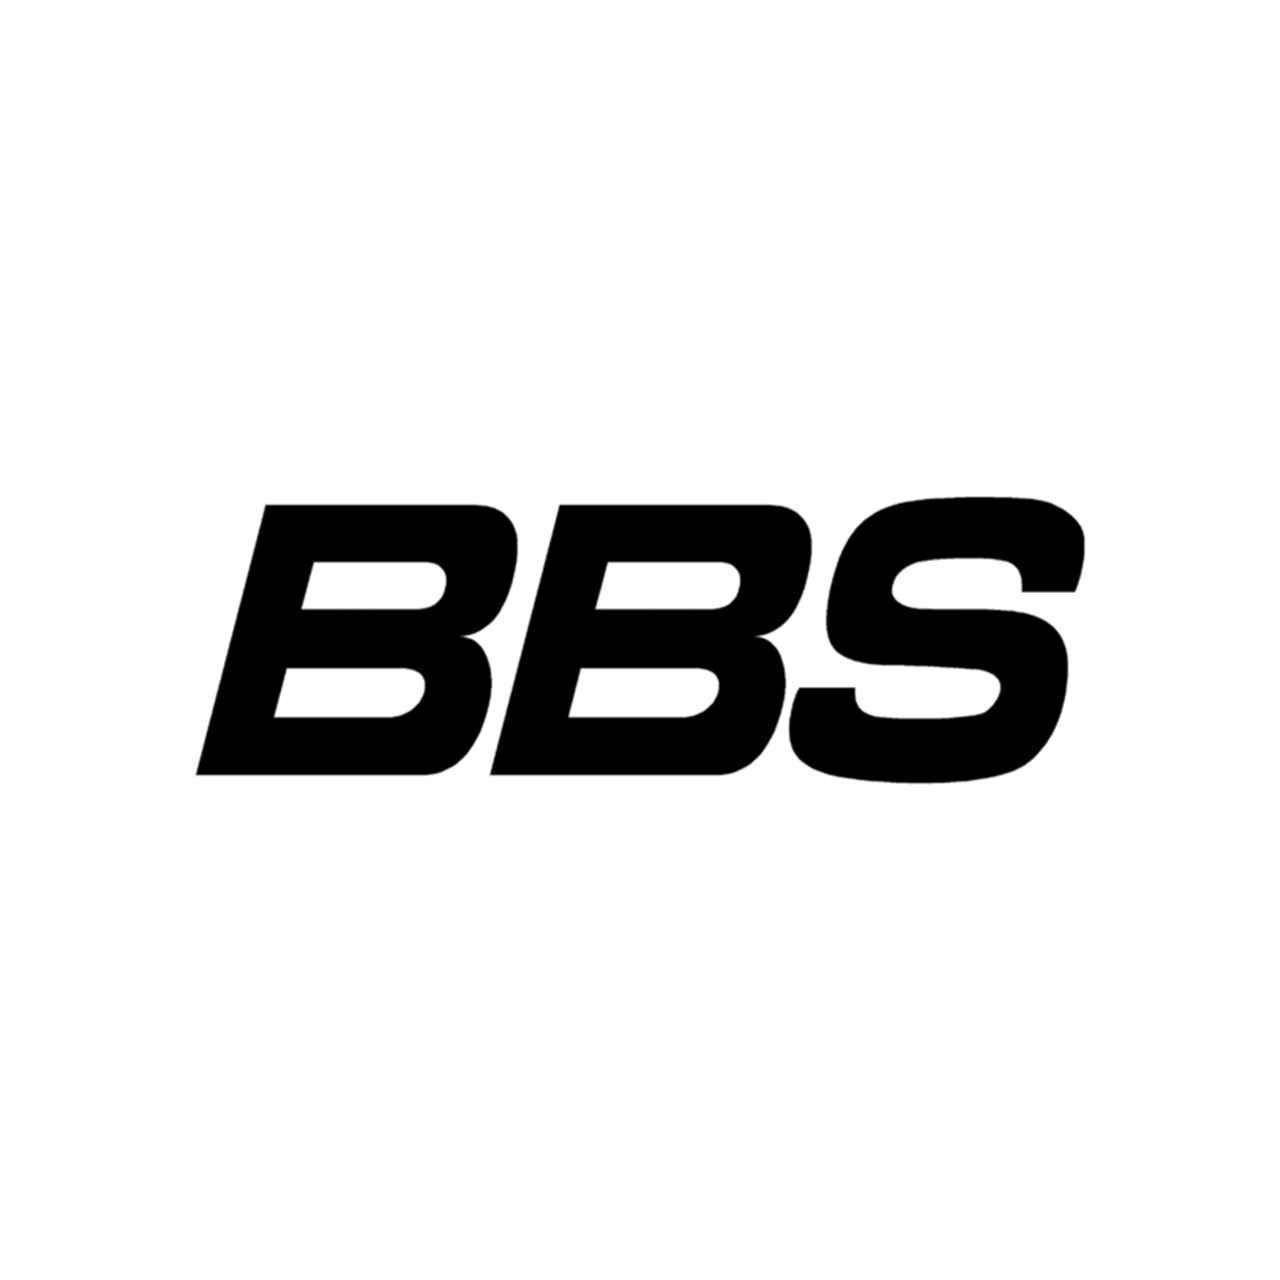 BBS Logo - Stickers Bbs Logo Vinyl Decal Sticker | Aftermarket Decals | Vinyl ...